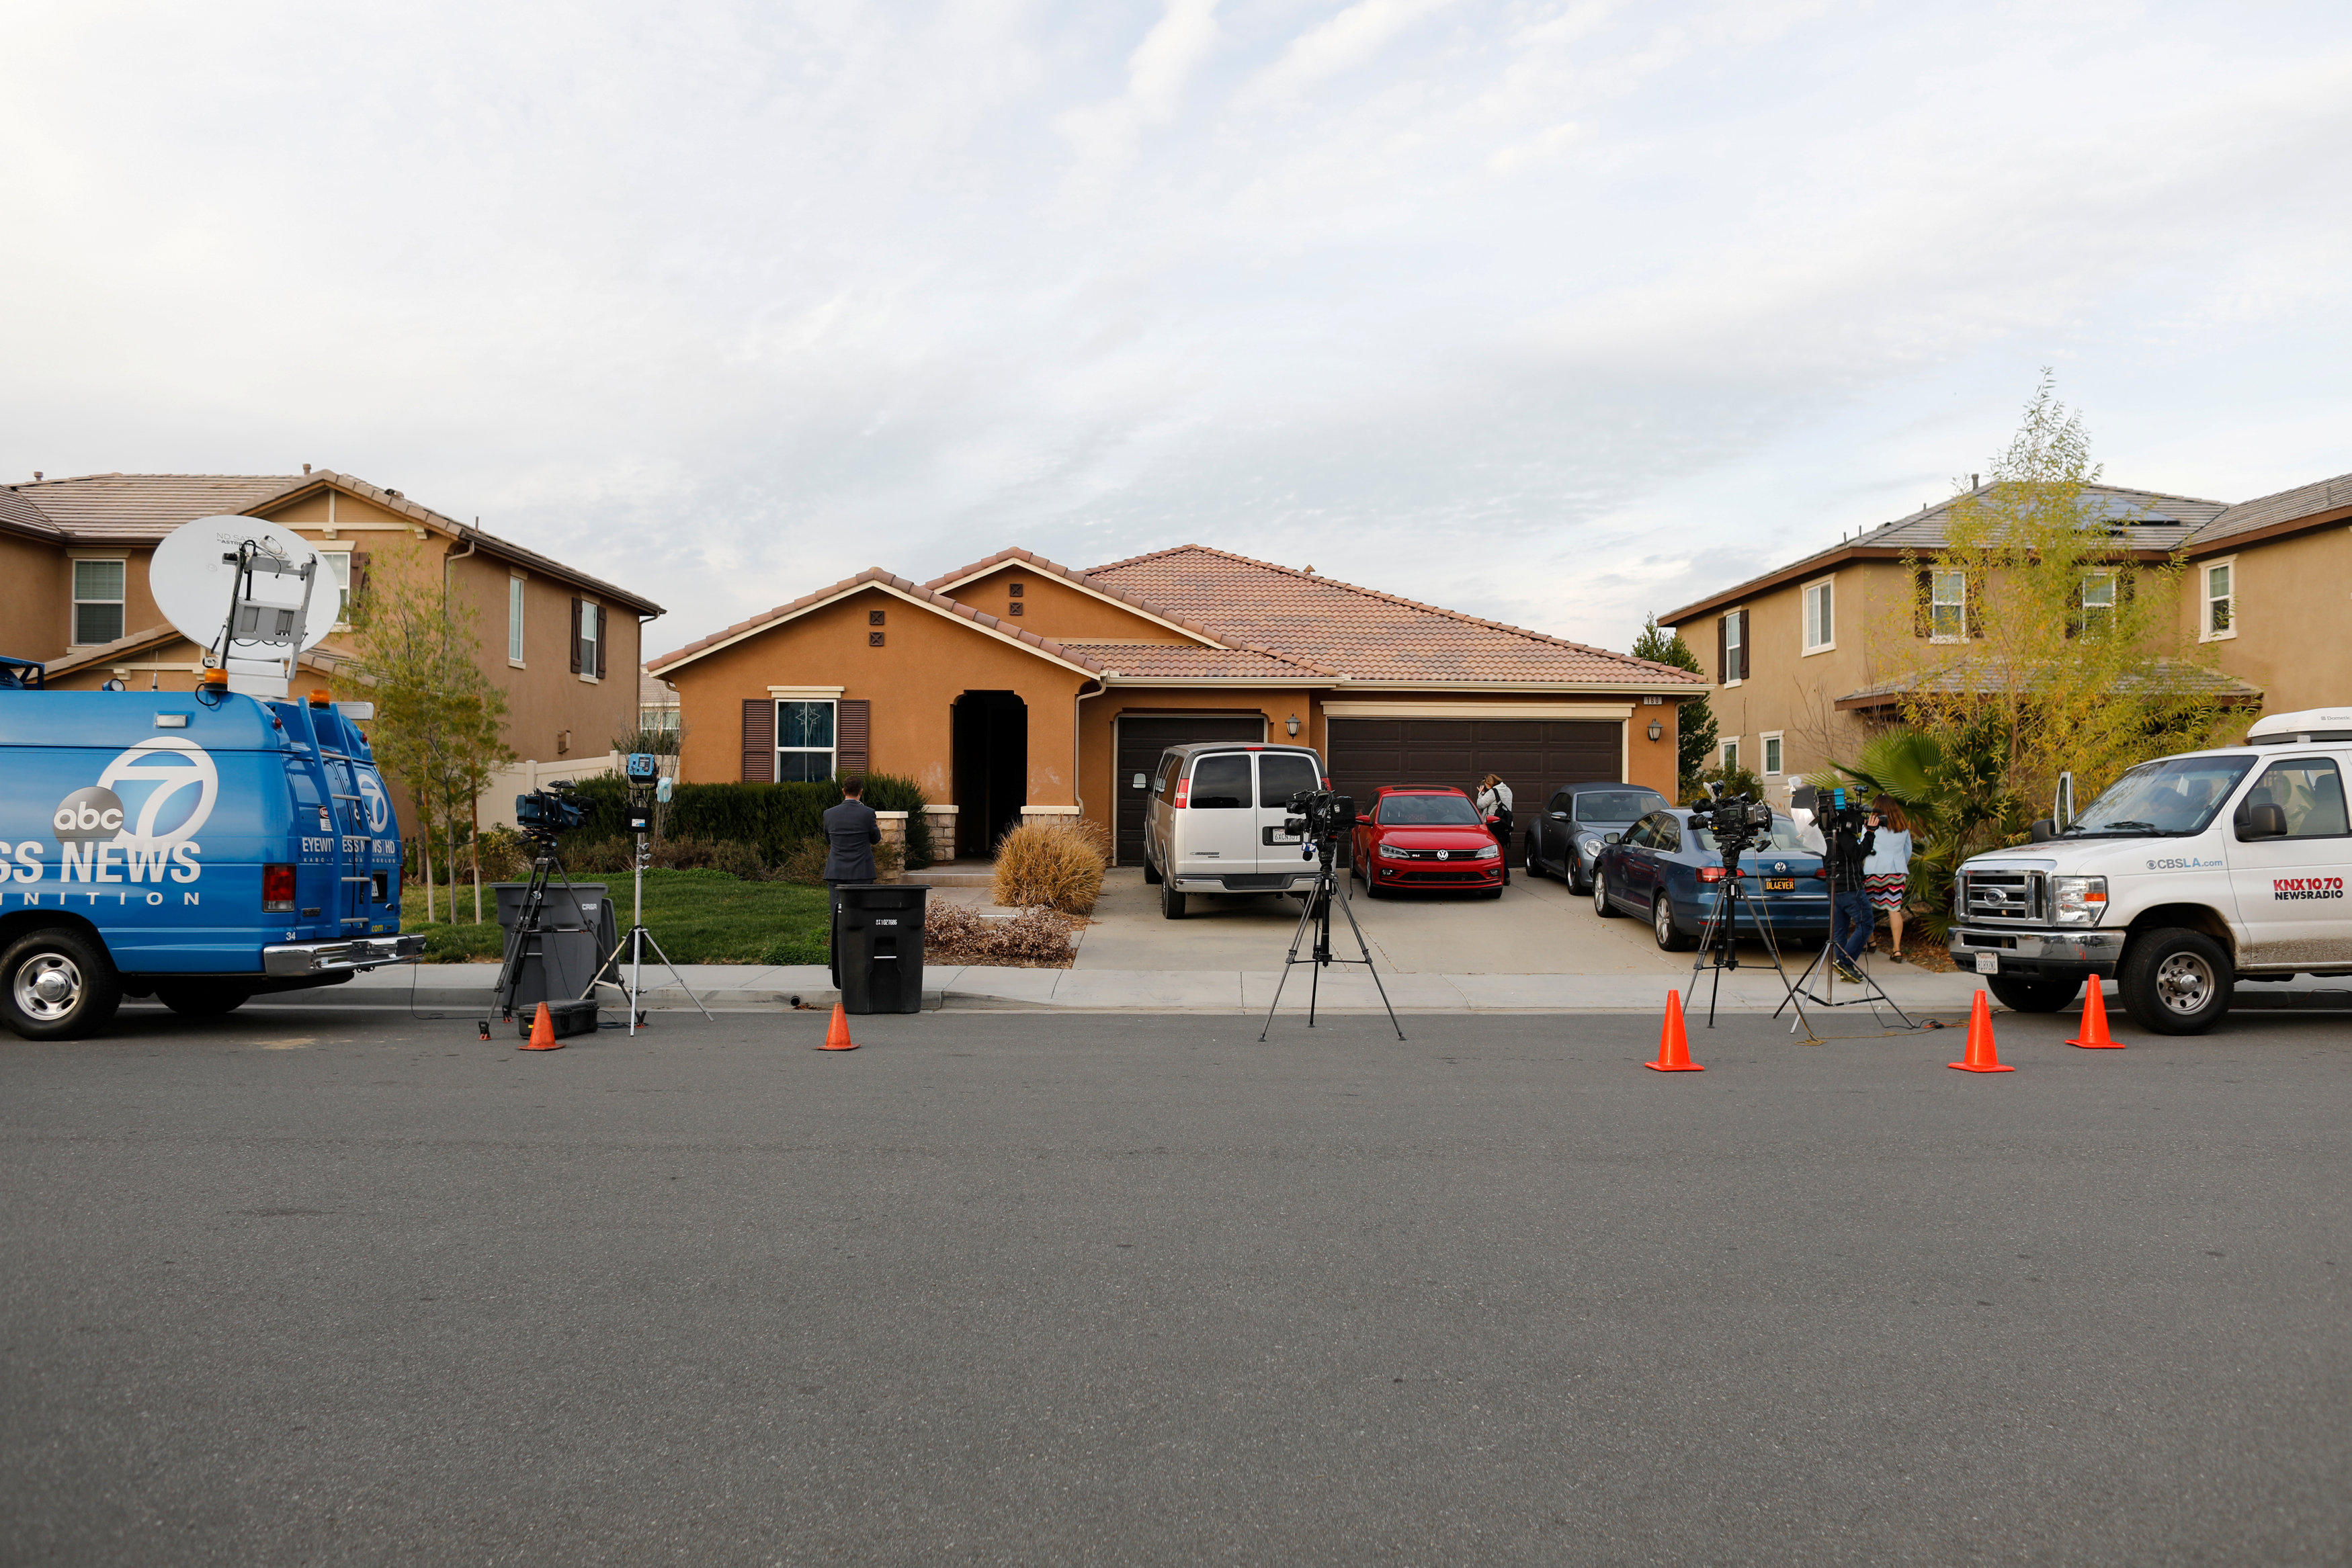 Σπίτι της φρίκης στην Καλιφόρνια: Τι αποκαλύπτουν οι γείτονες